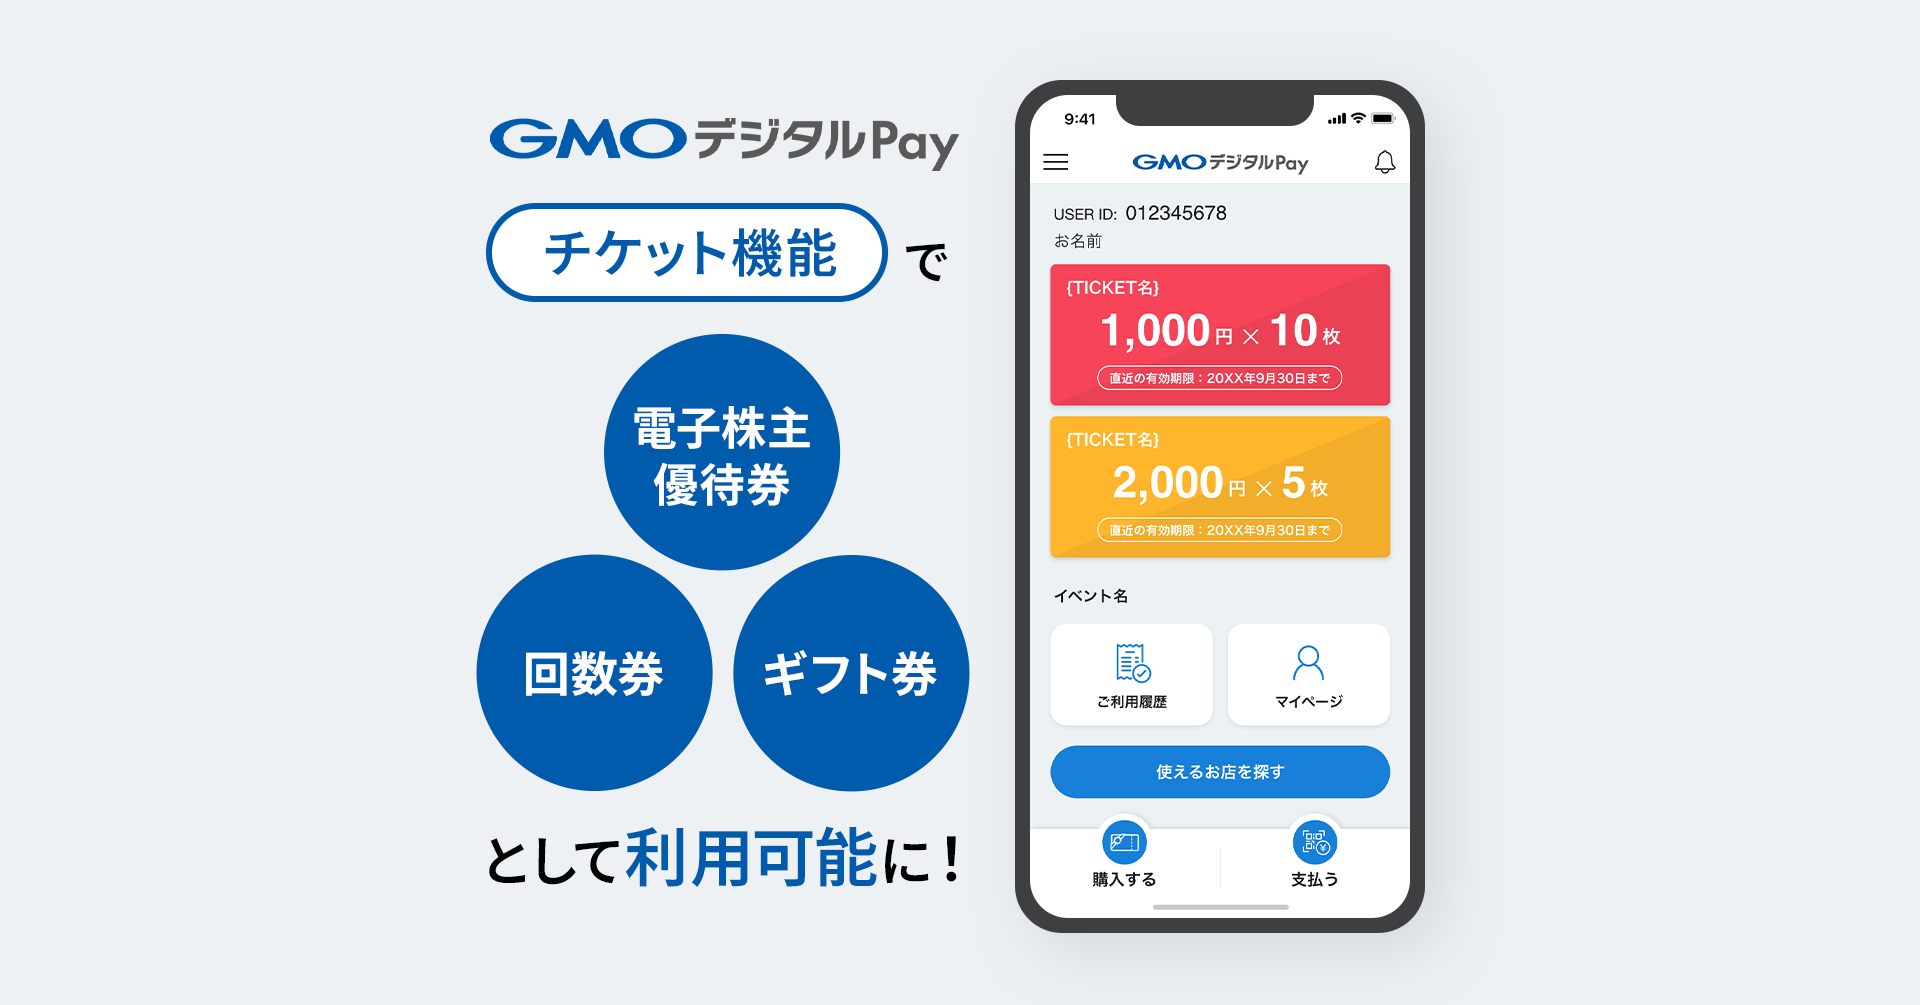 ハウス電子マネー・商品券等の電子化サービス「GMOデジタルPay」新機能「チケット機能」の提供を開始